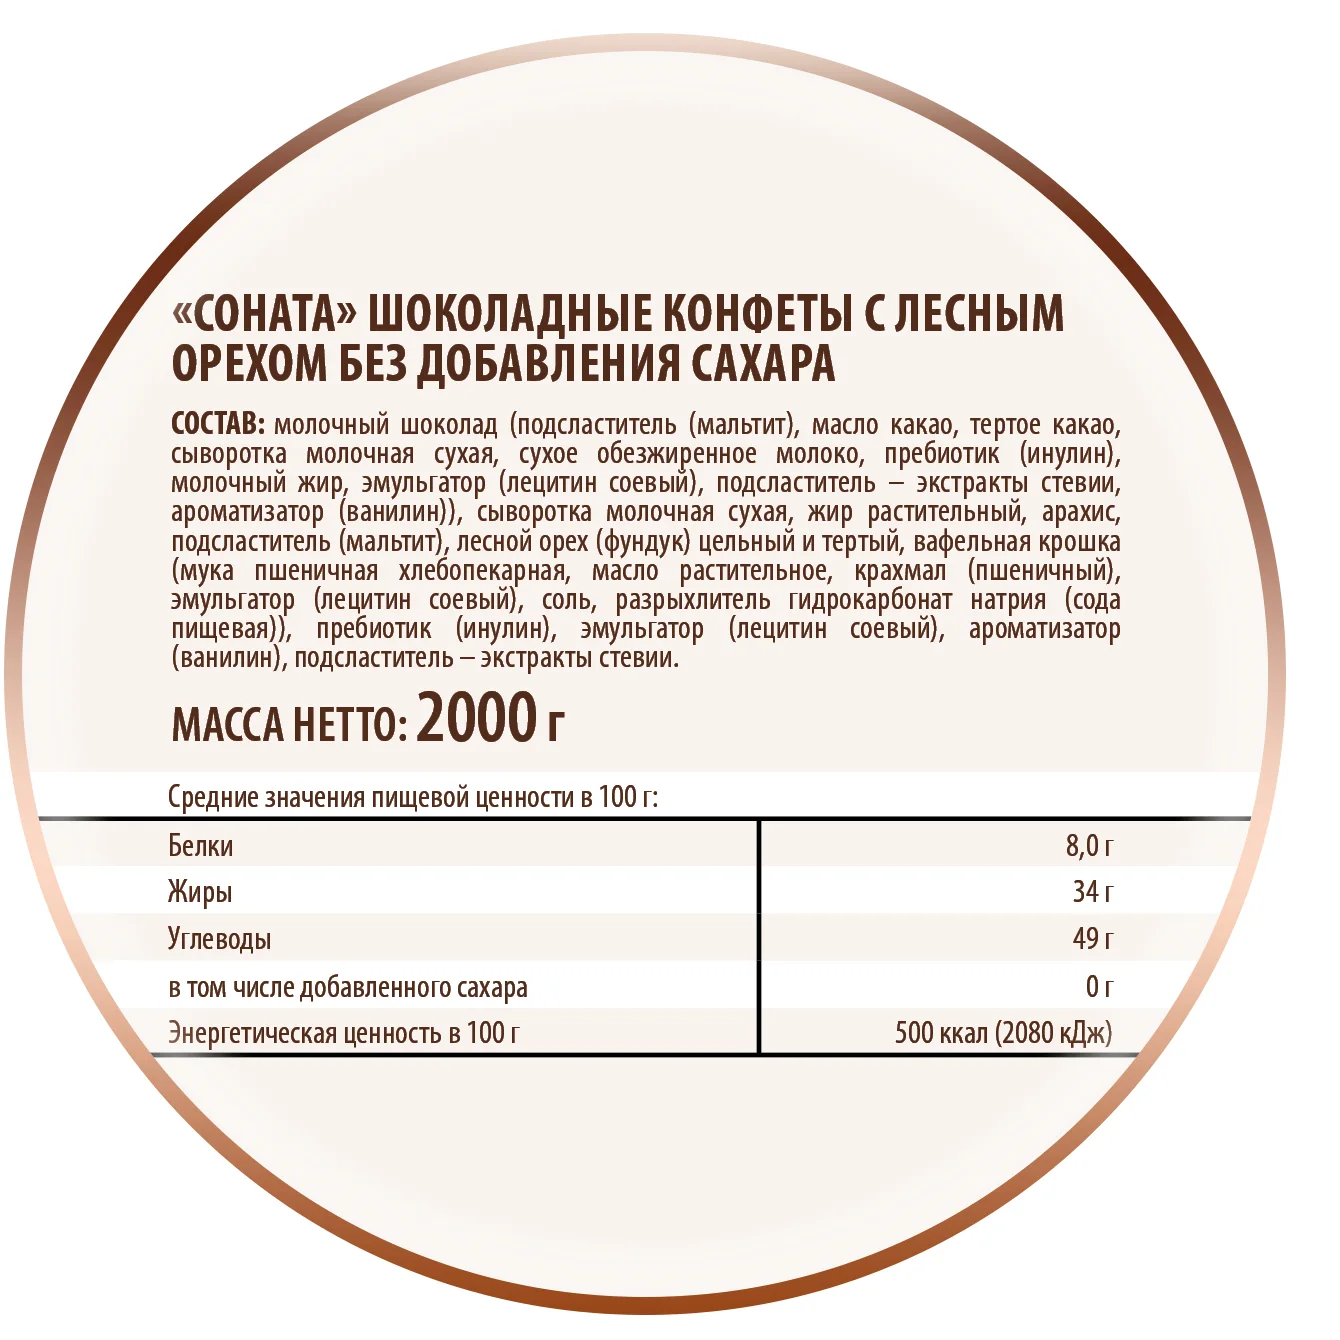 Конфеты Победа вкуса шоколадные "Соната" с лесным орехом без добавления сахара, 2000 г